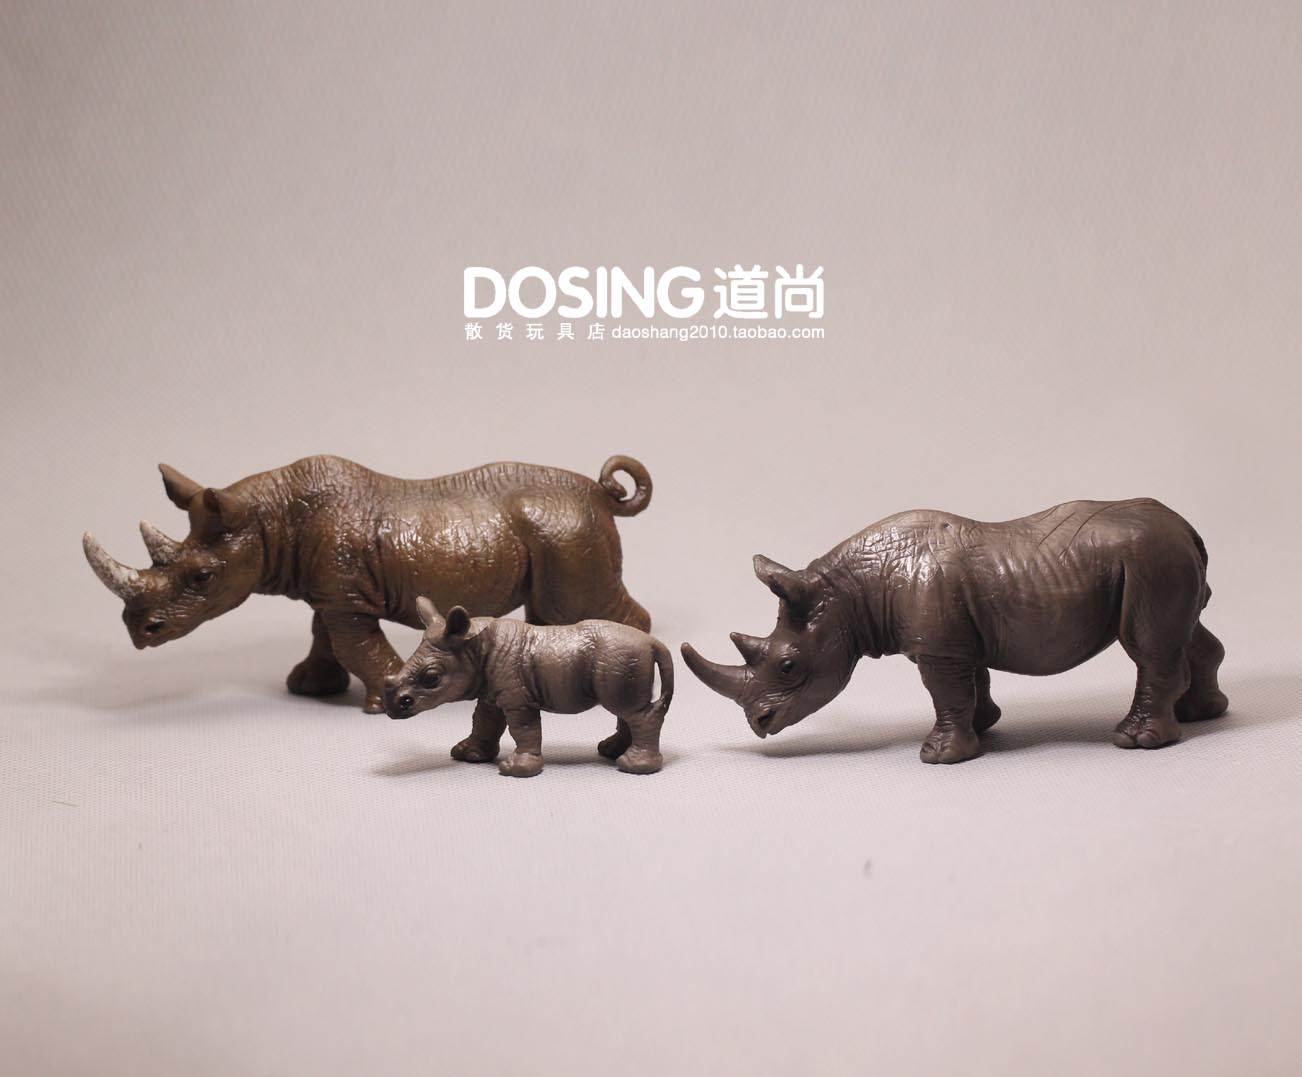 仿真动物 犀牛一家三口 亲子玩具 实心塑料PVC玩具 玩偶摆件模型